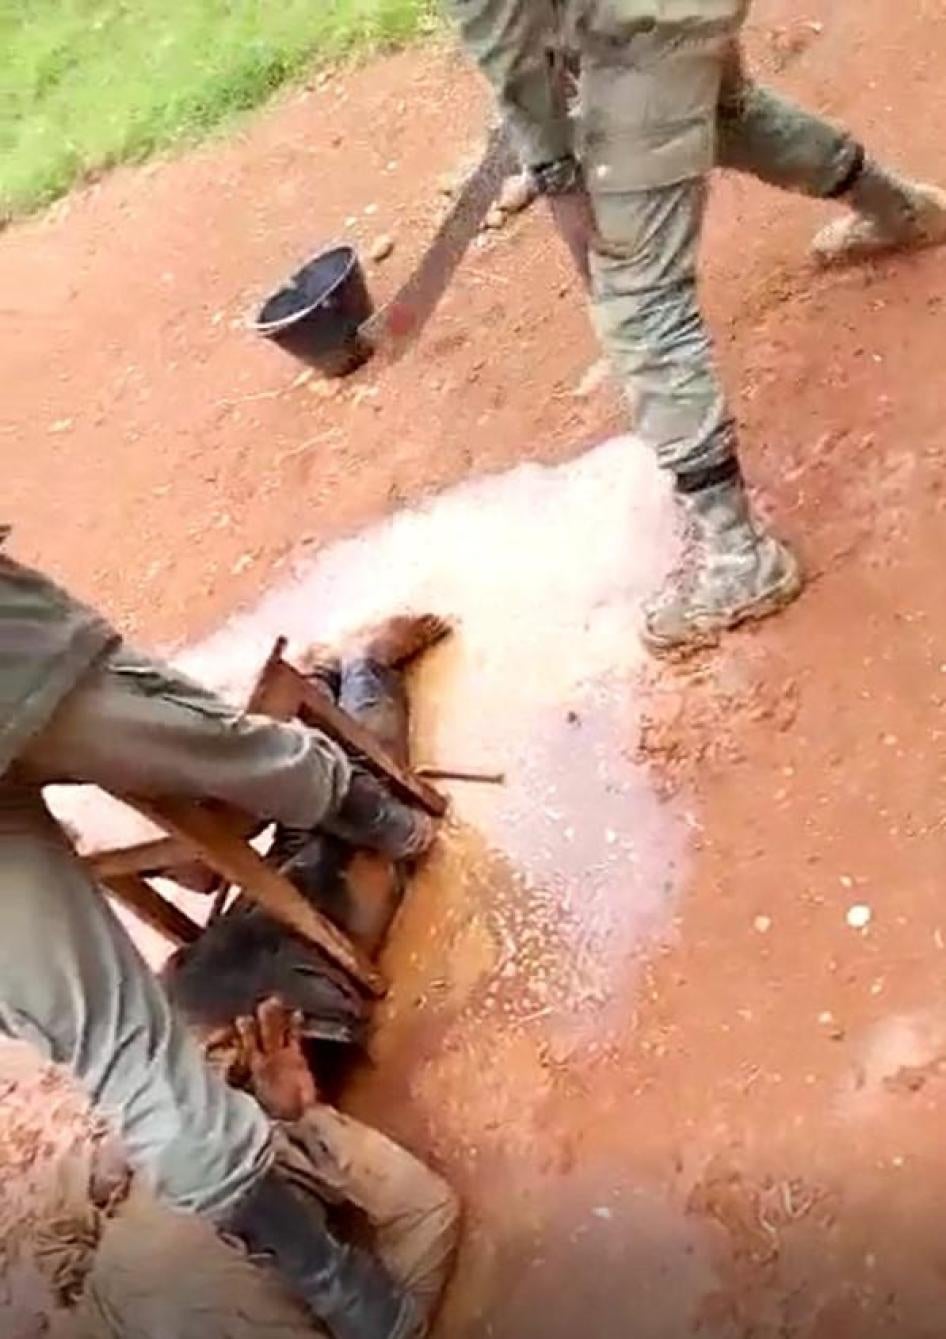 Image tirée d’une vidéo montrant un séparatiste armé présumé se faire torturer par des gendarmes dans la région du Sud-Ouest du Cameroun lors de son arrestation en mai 2018.